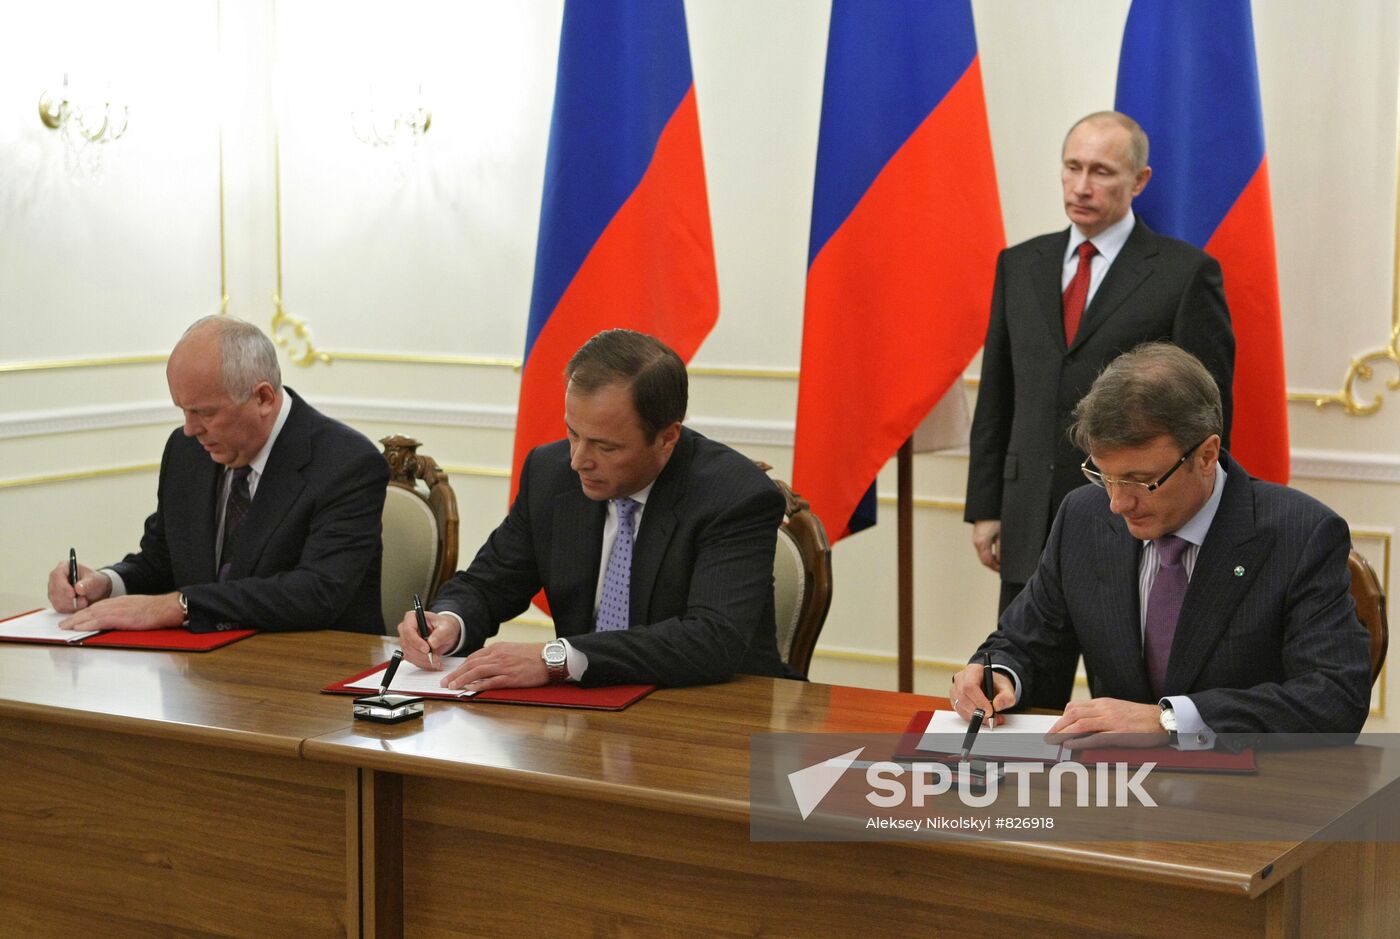 Signing memorandum, Novo-Ogaryovo